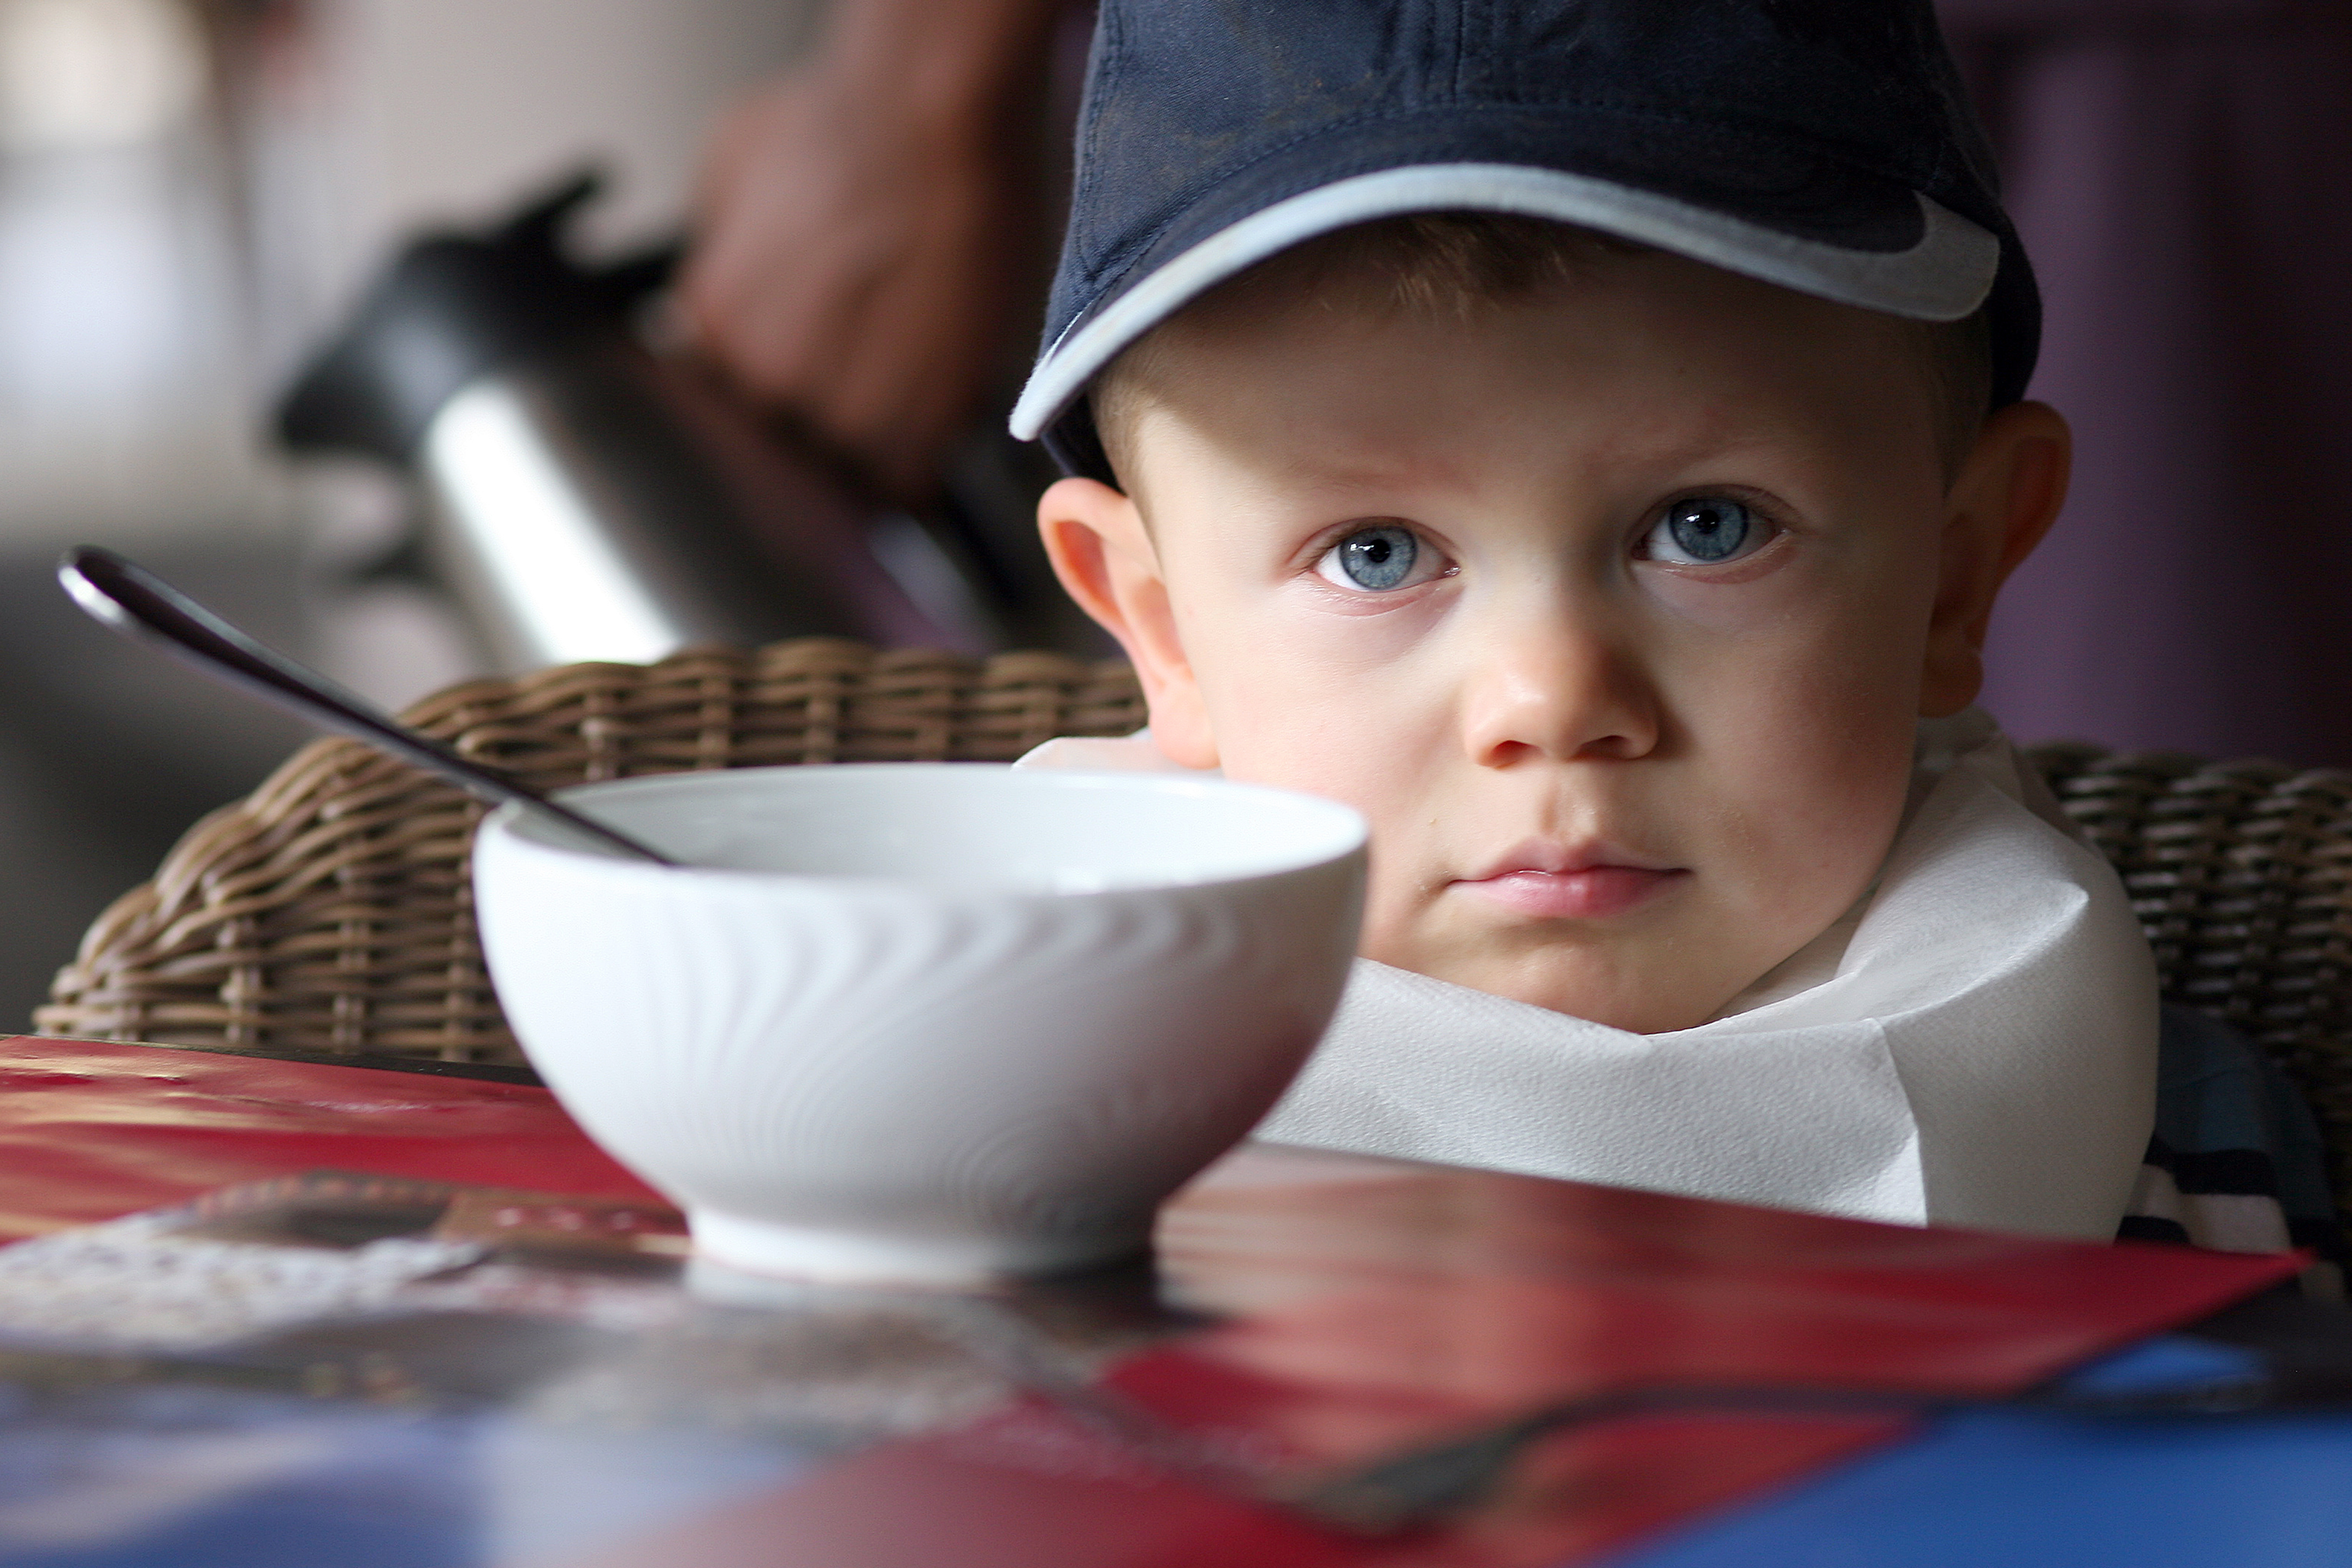 Les comportements alimentaires inhabituels pourraient constituer un nouvel indicateur de diagnostic de l'autisme